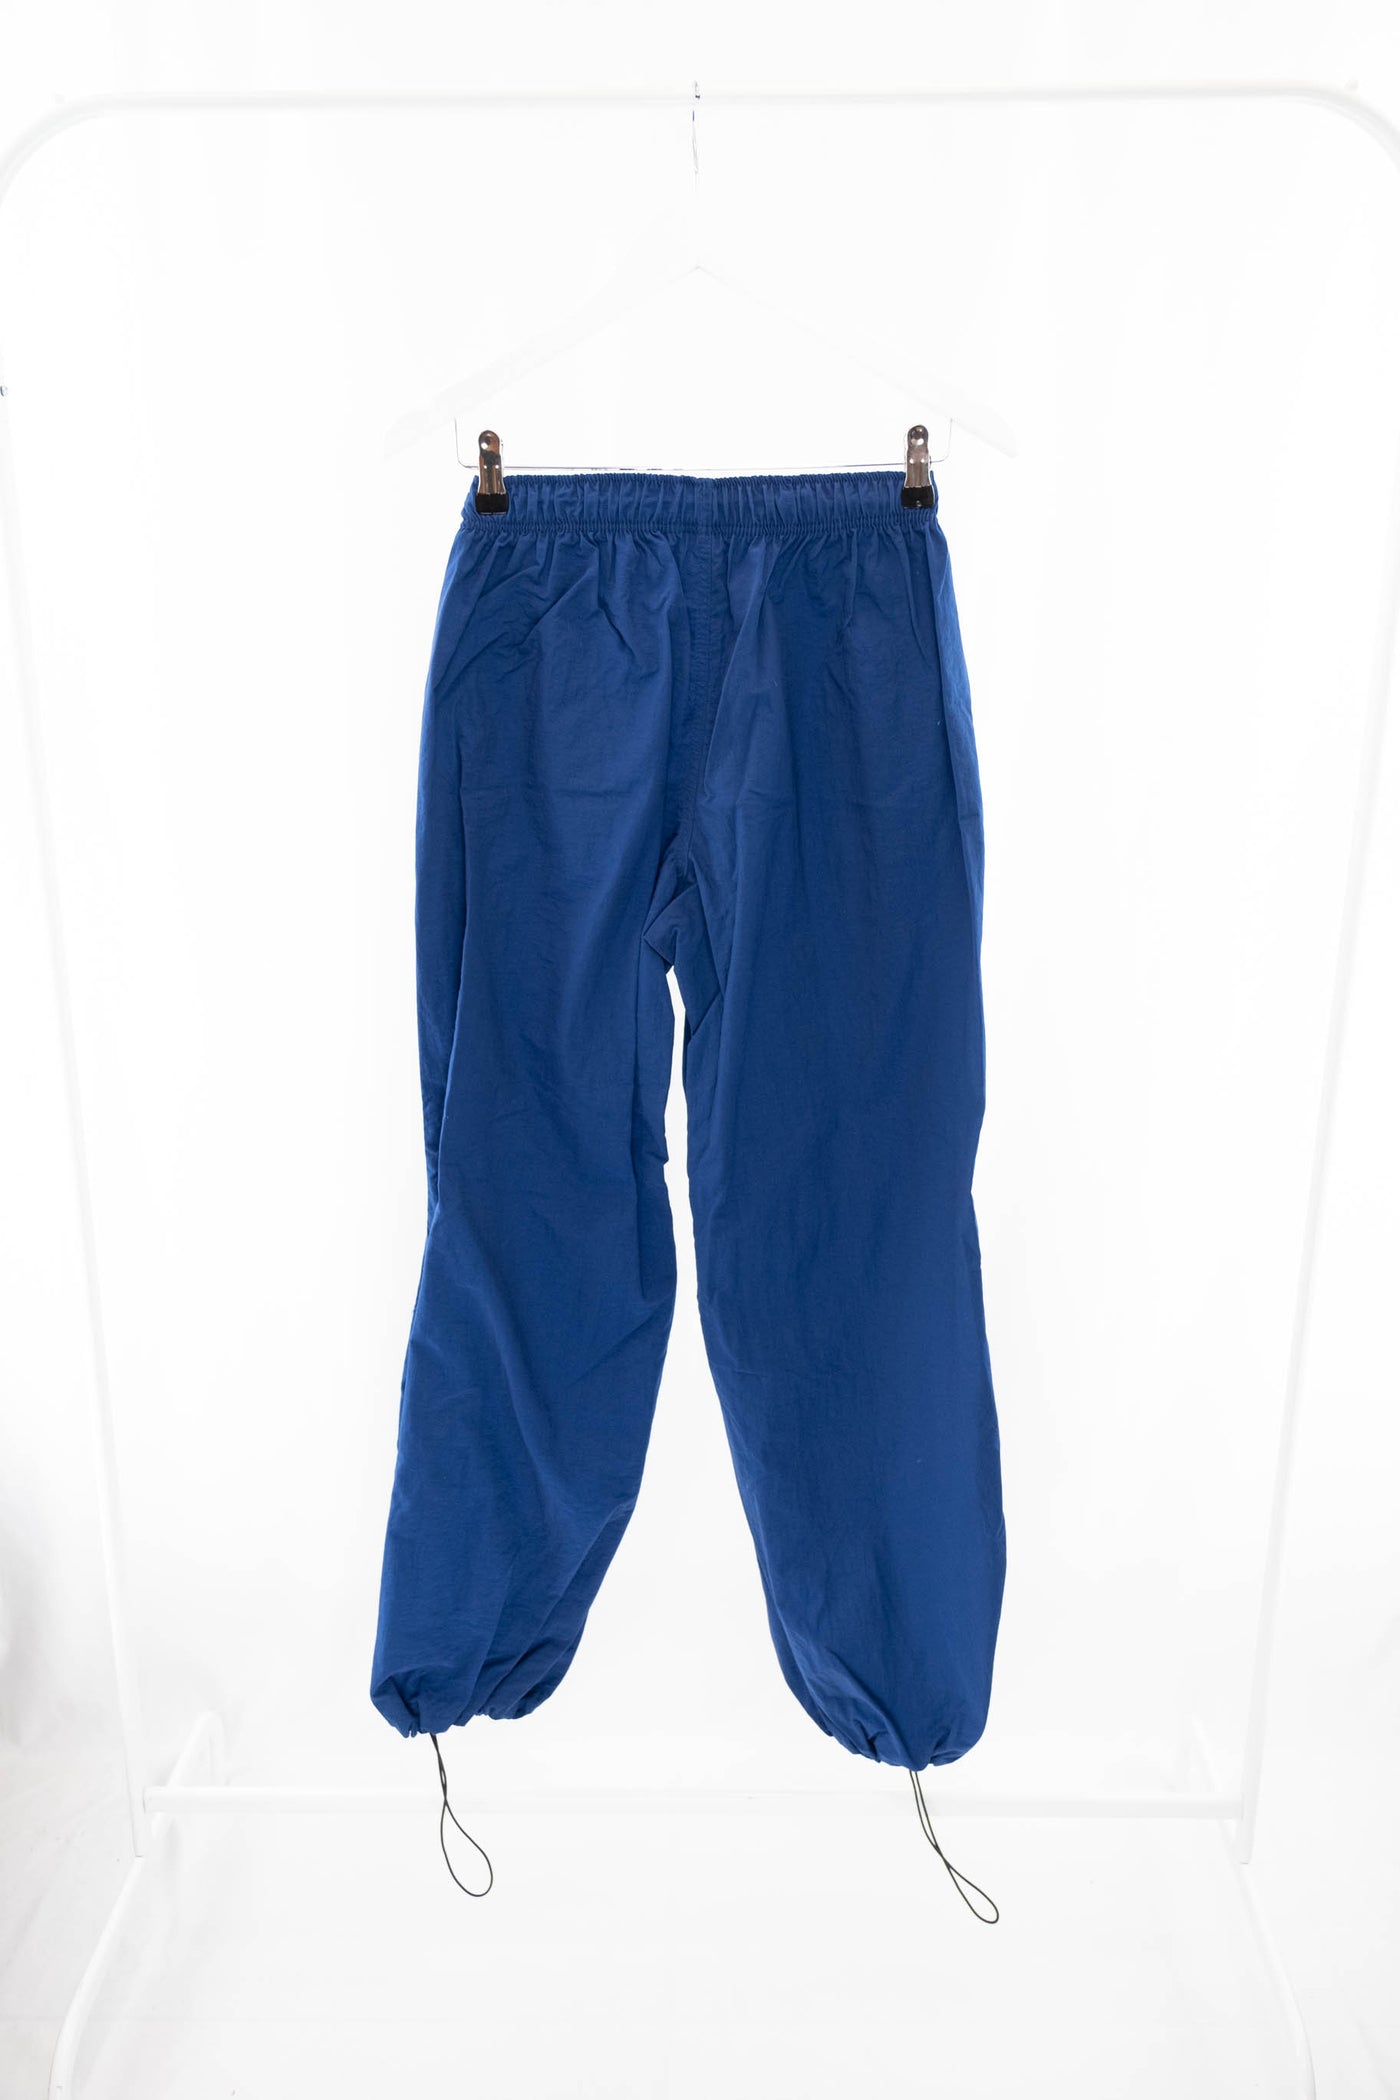 Pantalón parachute azul